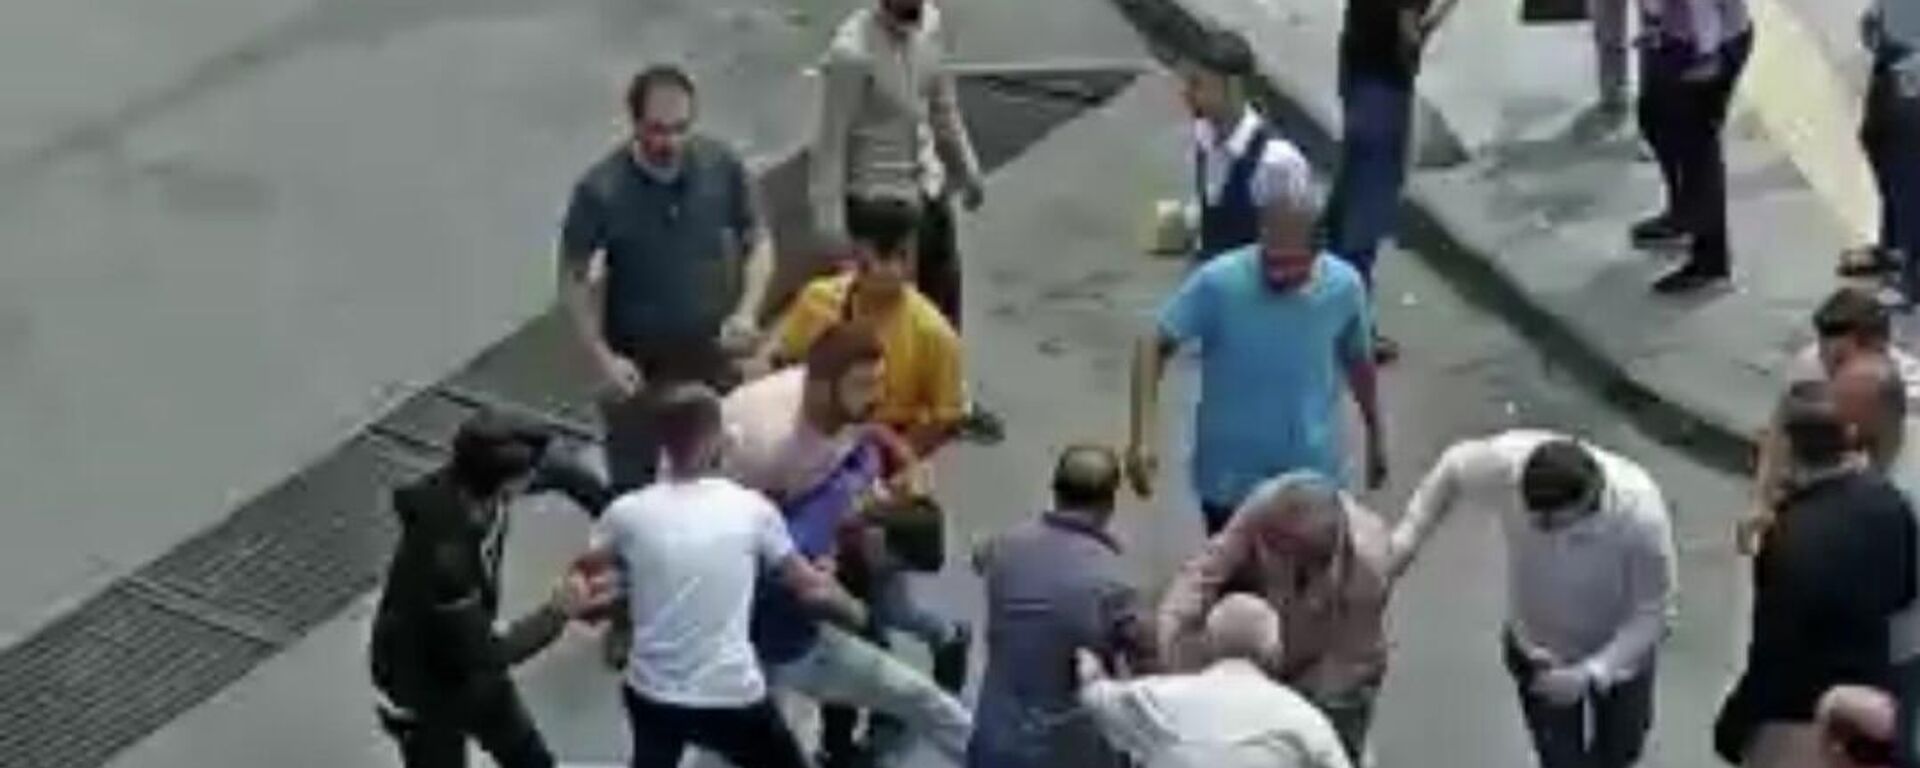 Tekirdağ'da Cumhurbaşkanına küfür eden kardeşler, tekme tokat dövüldü - Sputnik Türkiye, 1920, 25.06.2022